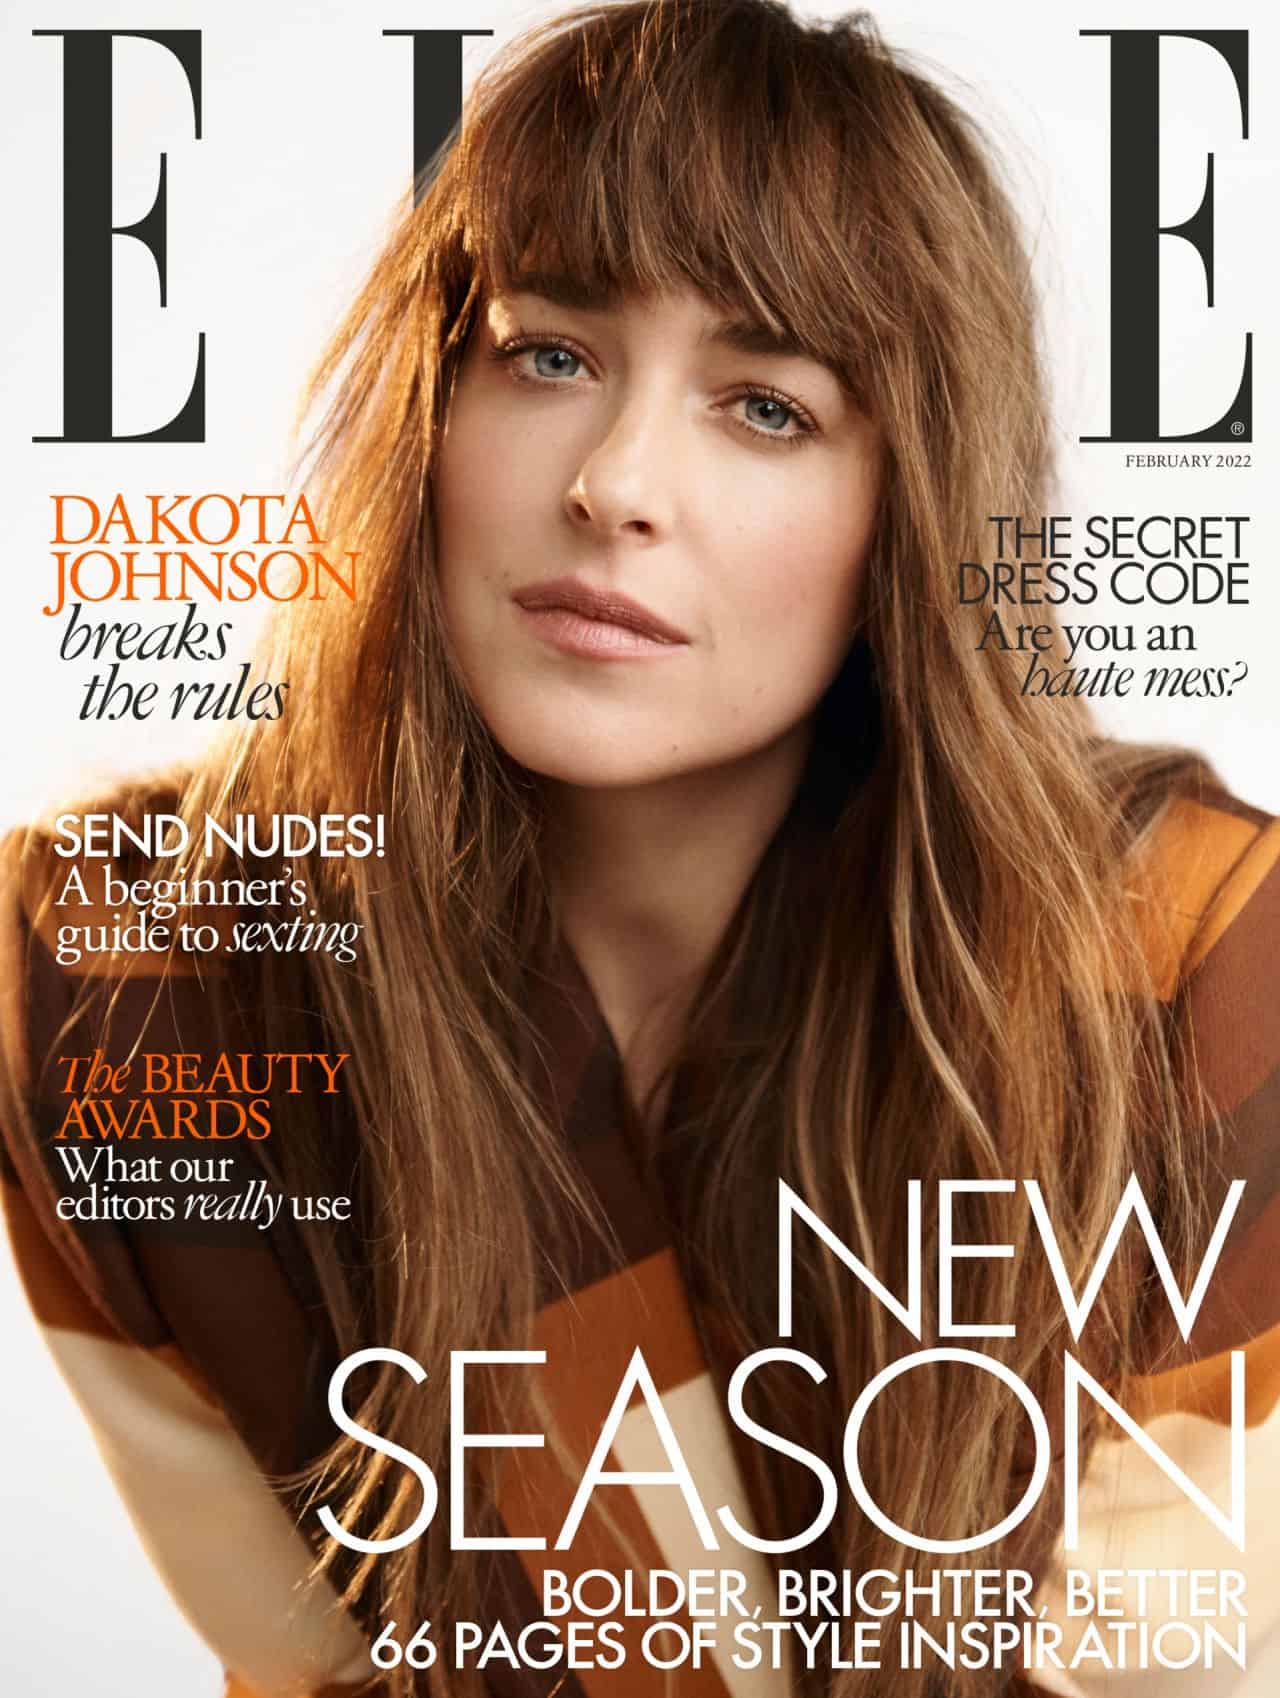 Dakota Johnson is the Cover Star of UK ELLE February 2022 Edition